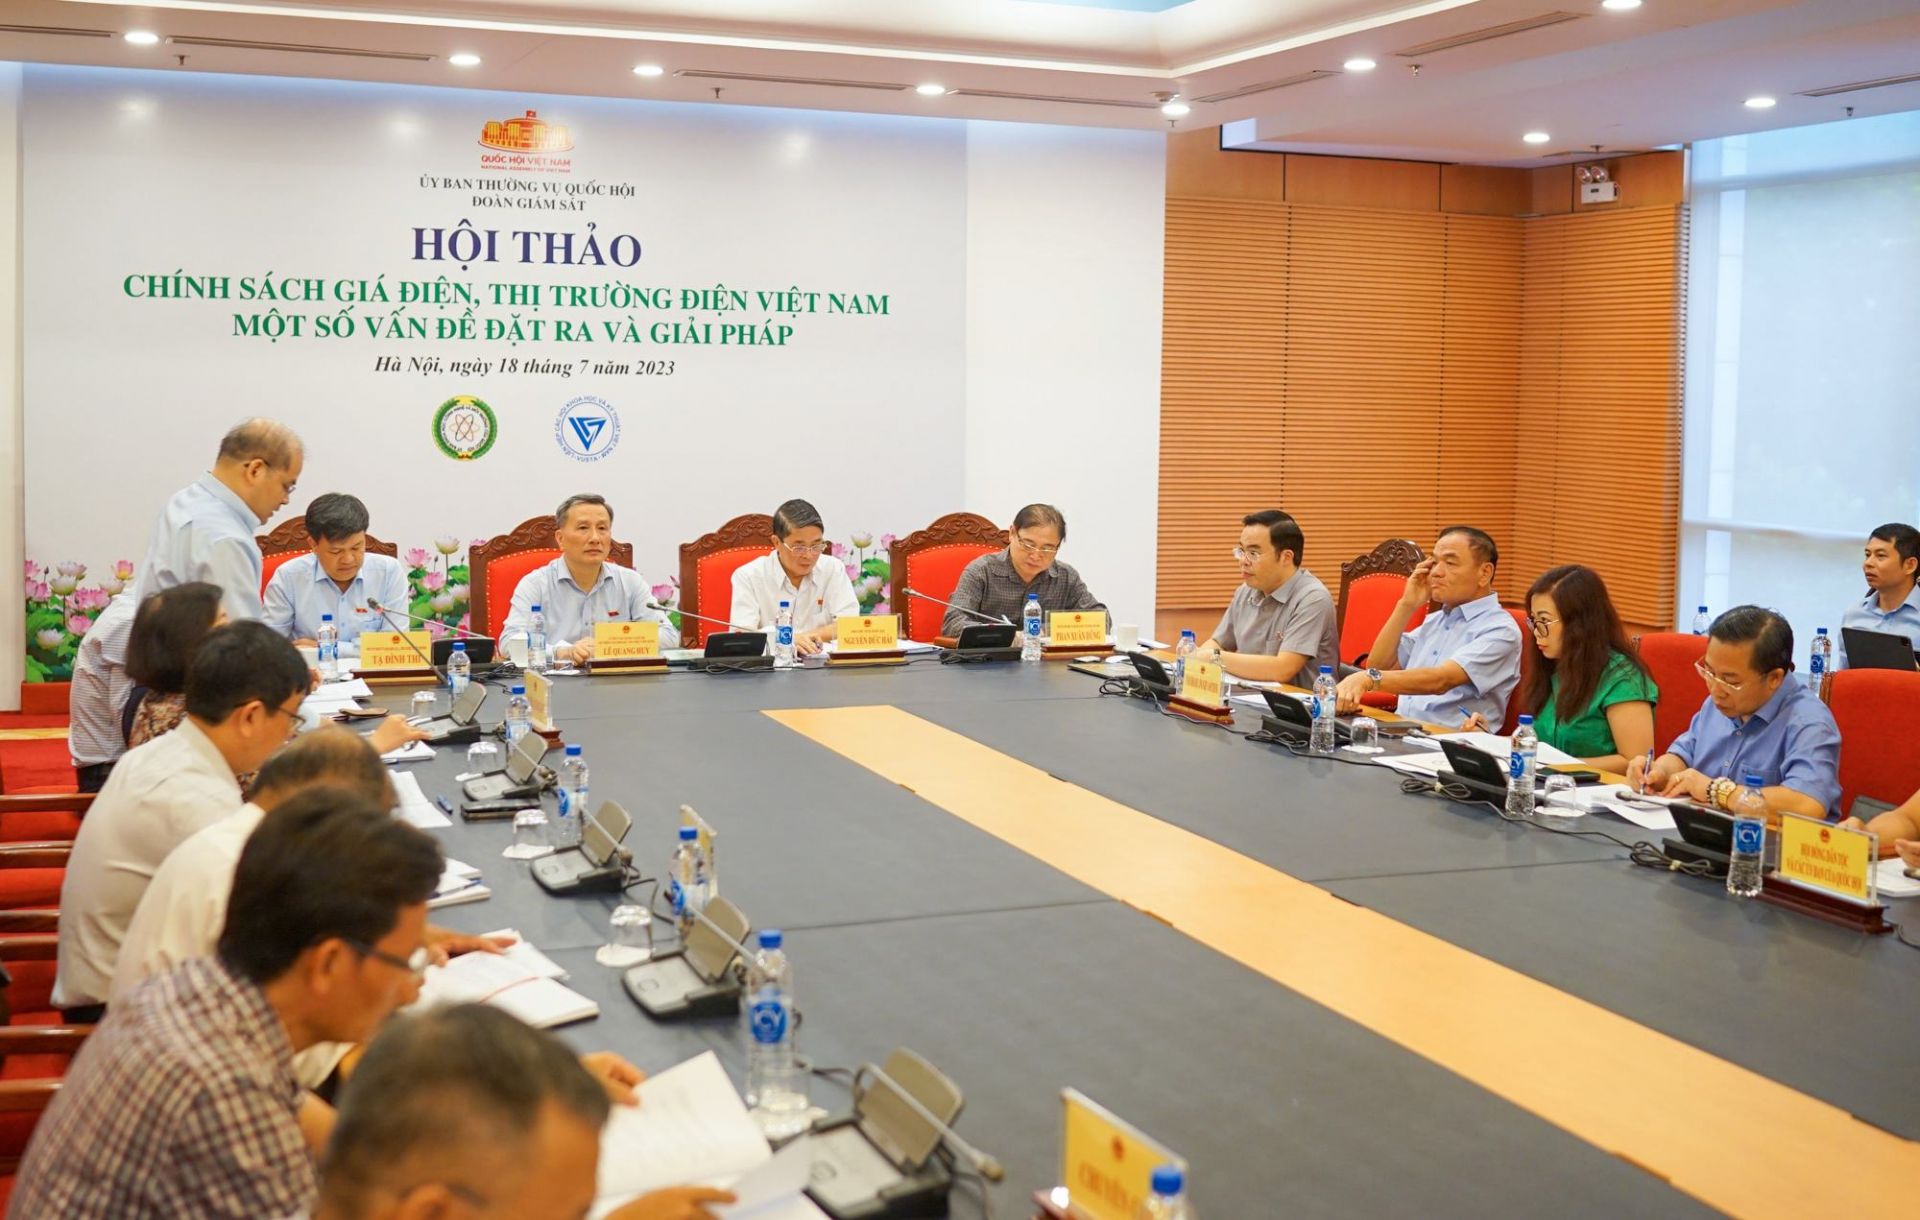 Hội thảo “Chính sách giá điện, thị trường điện Việt Nam - Một số vấn đề đặt ra và giải pháp”